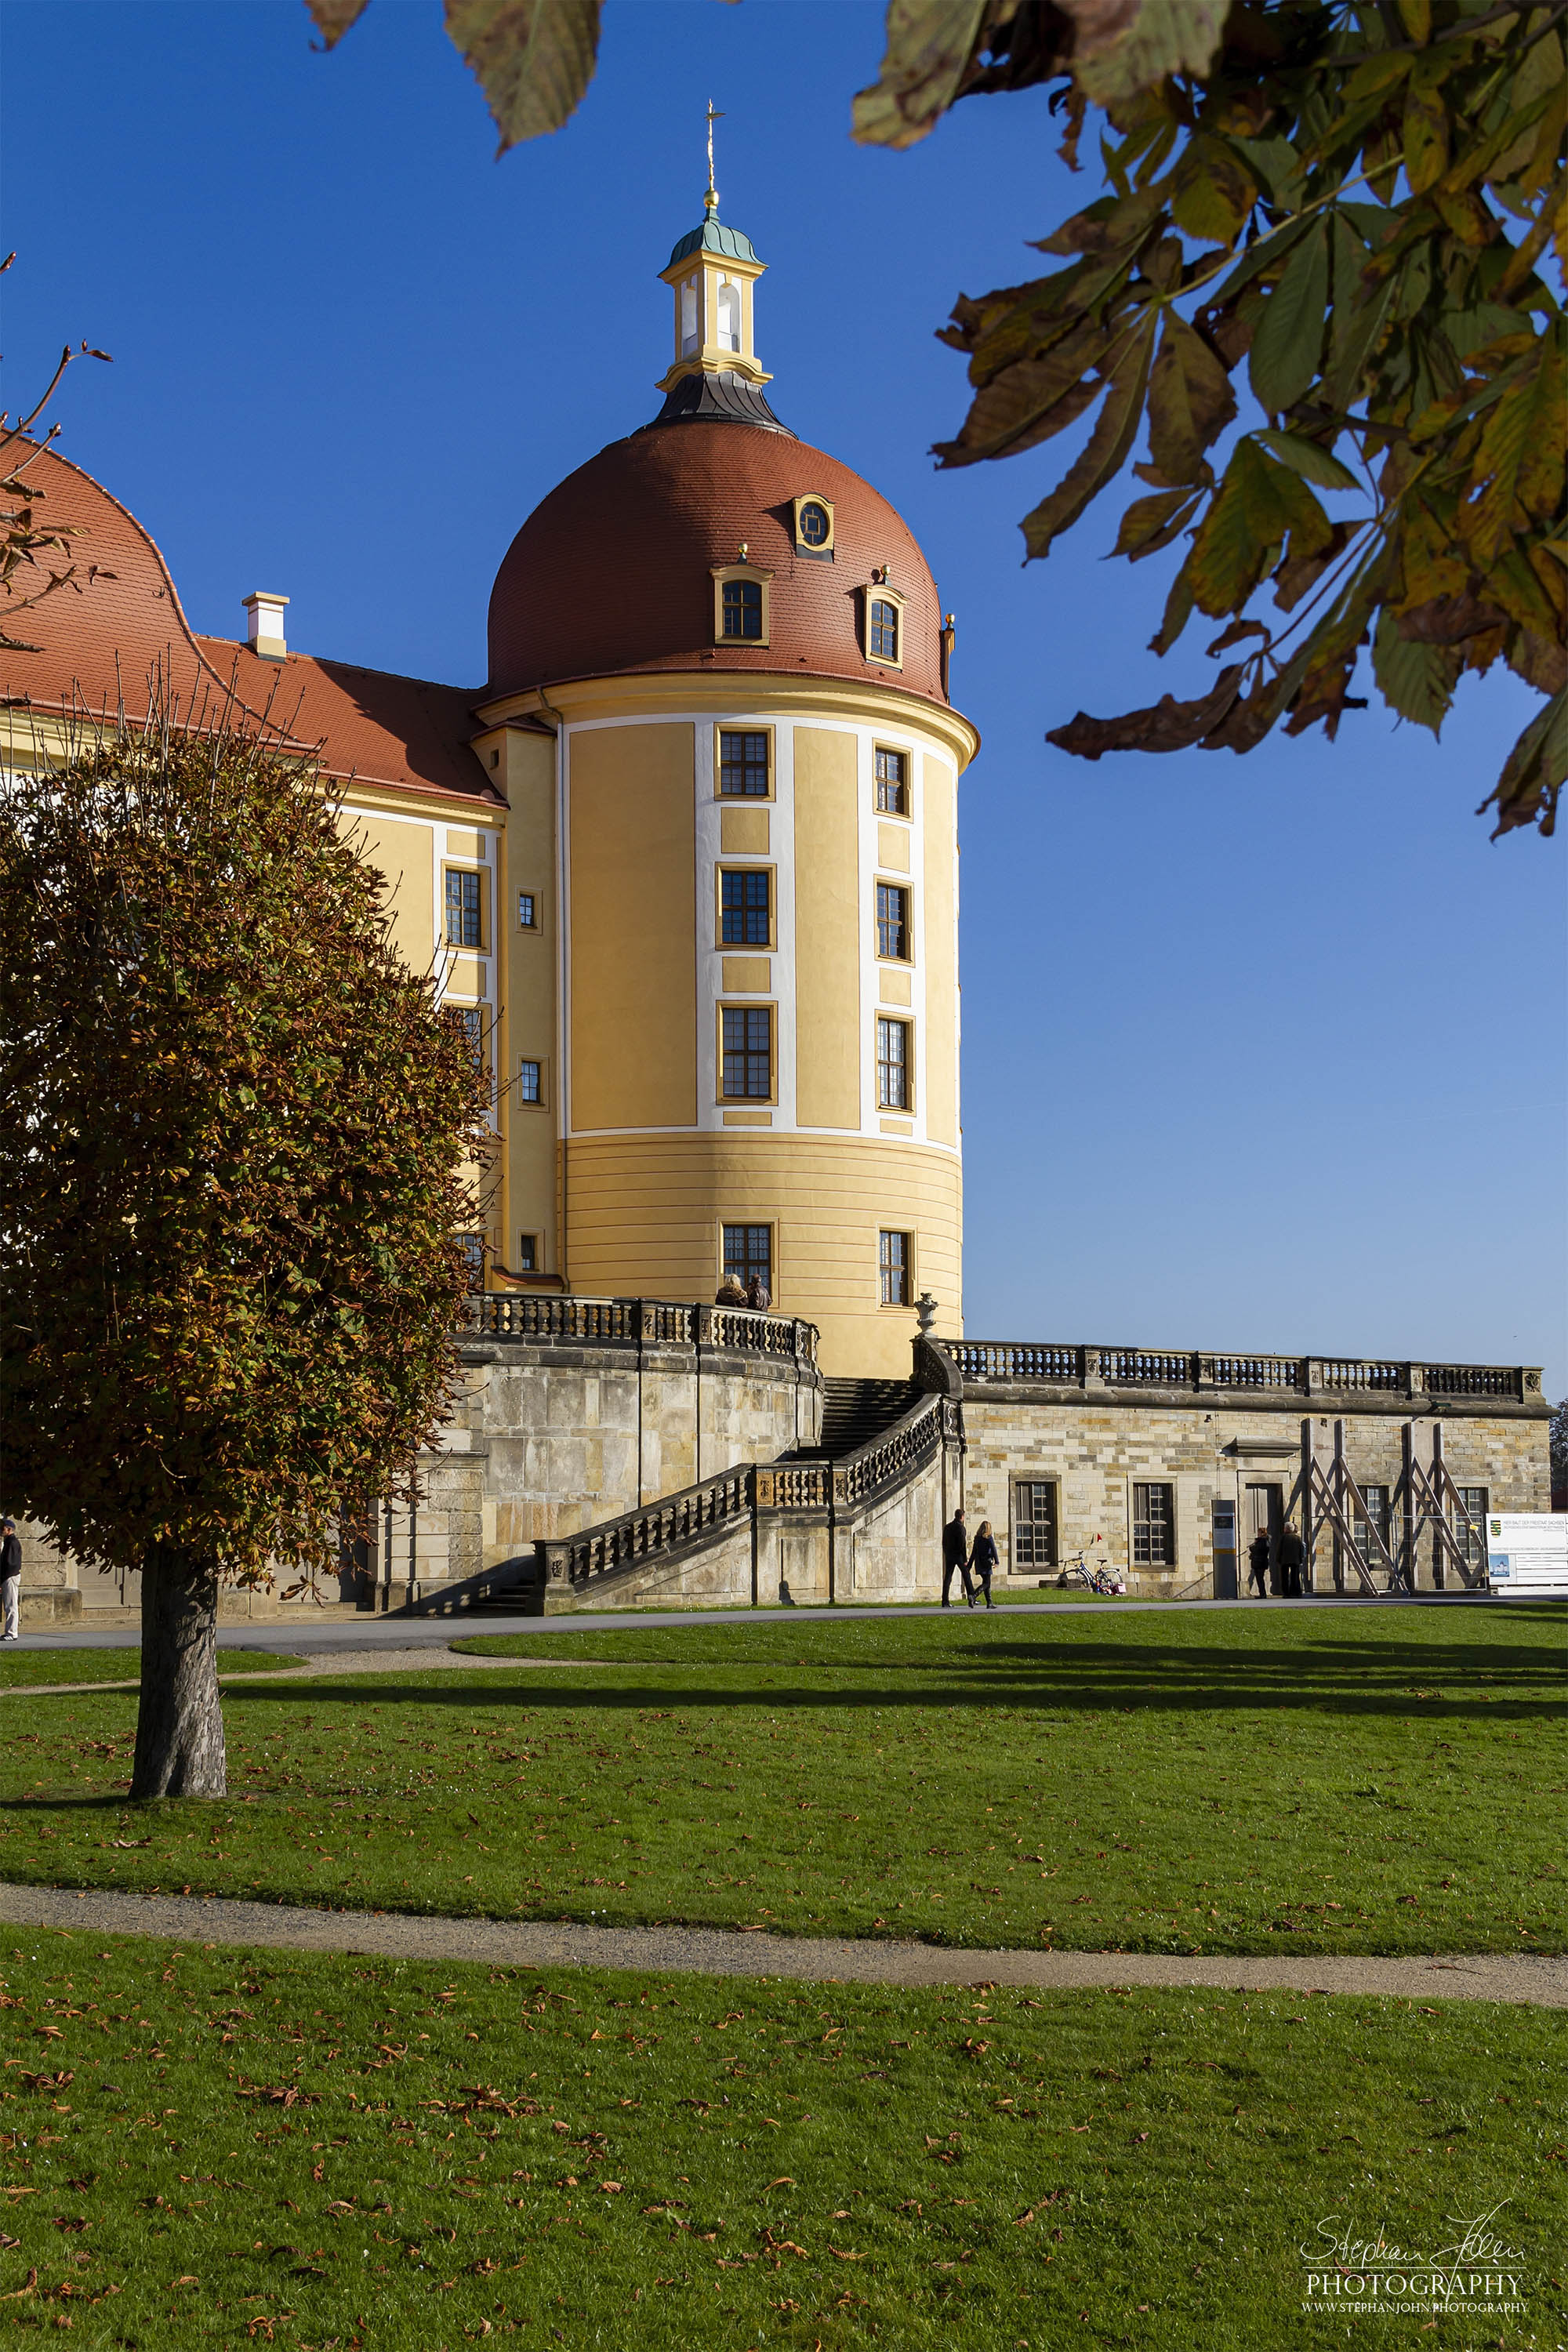 <p>Turm am Schloss Moritzburg</p>